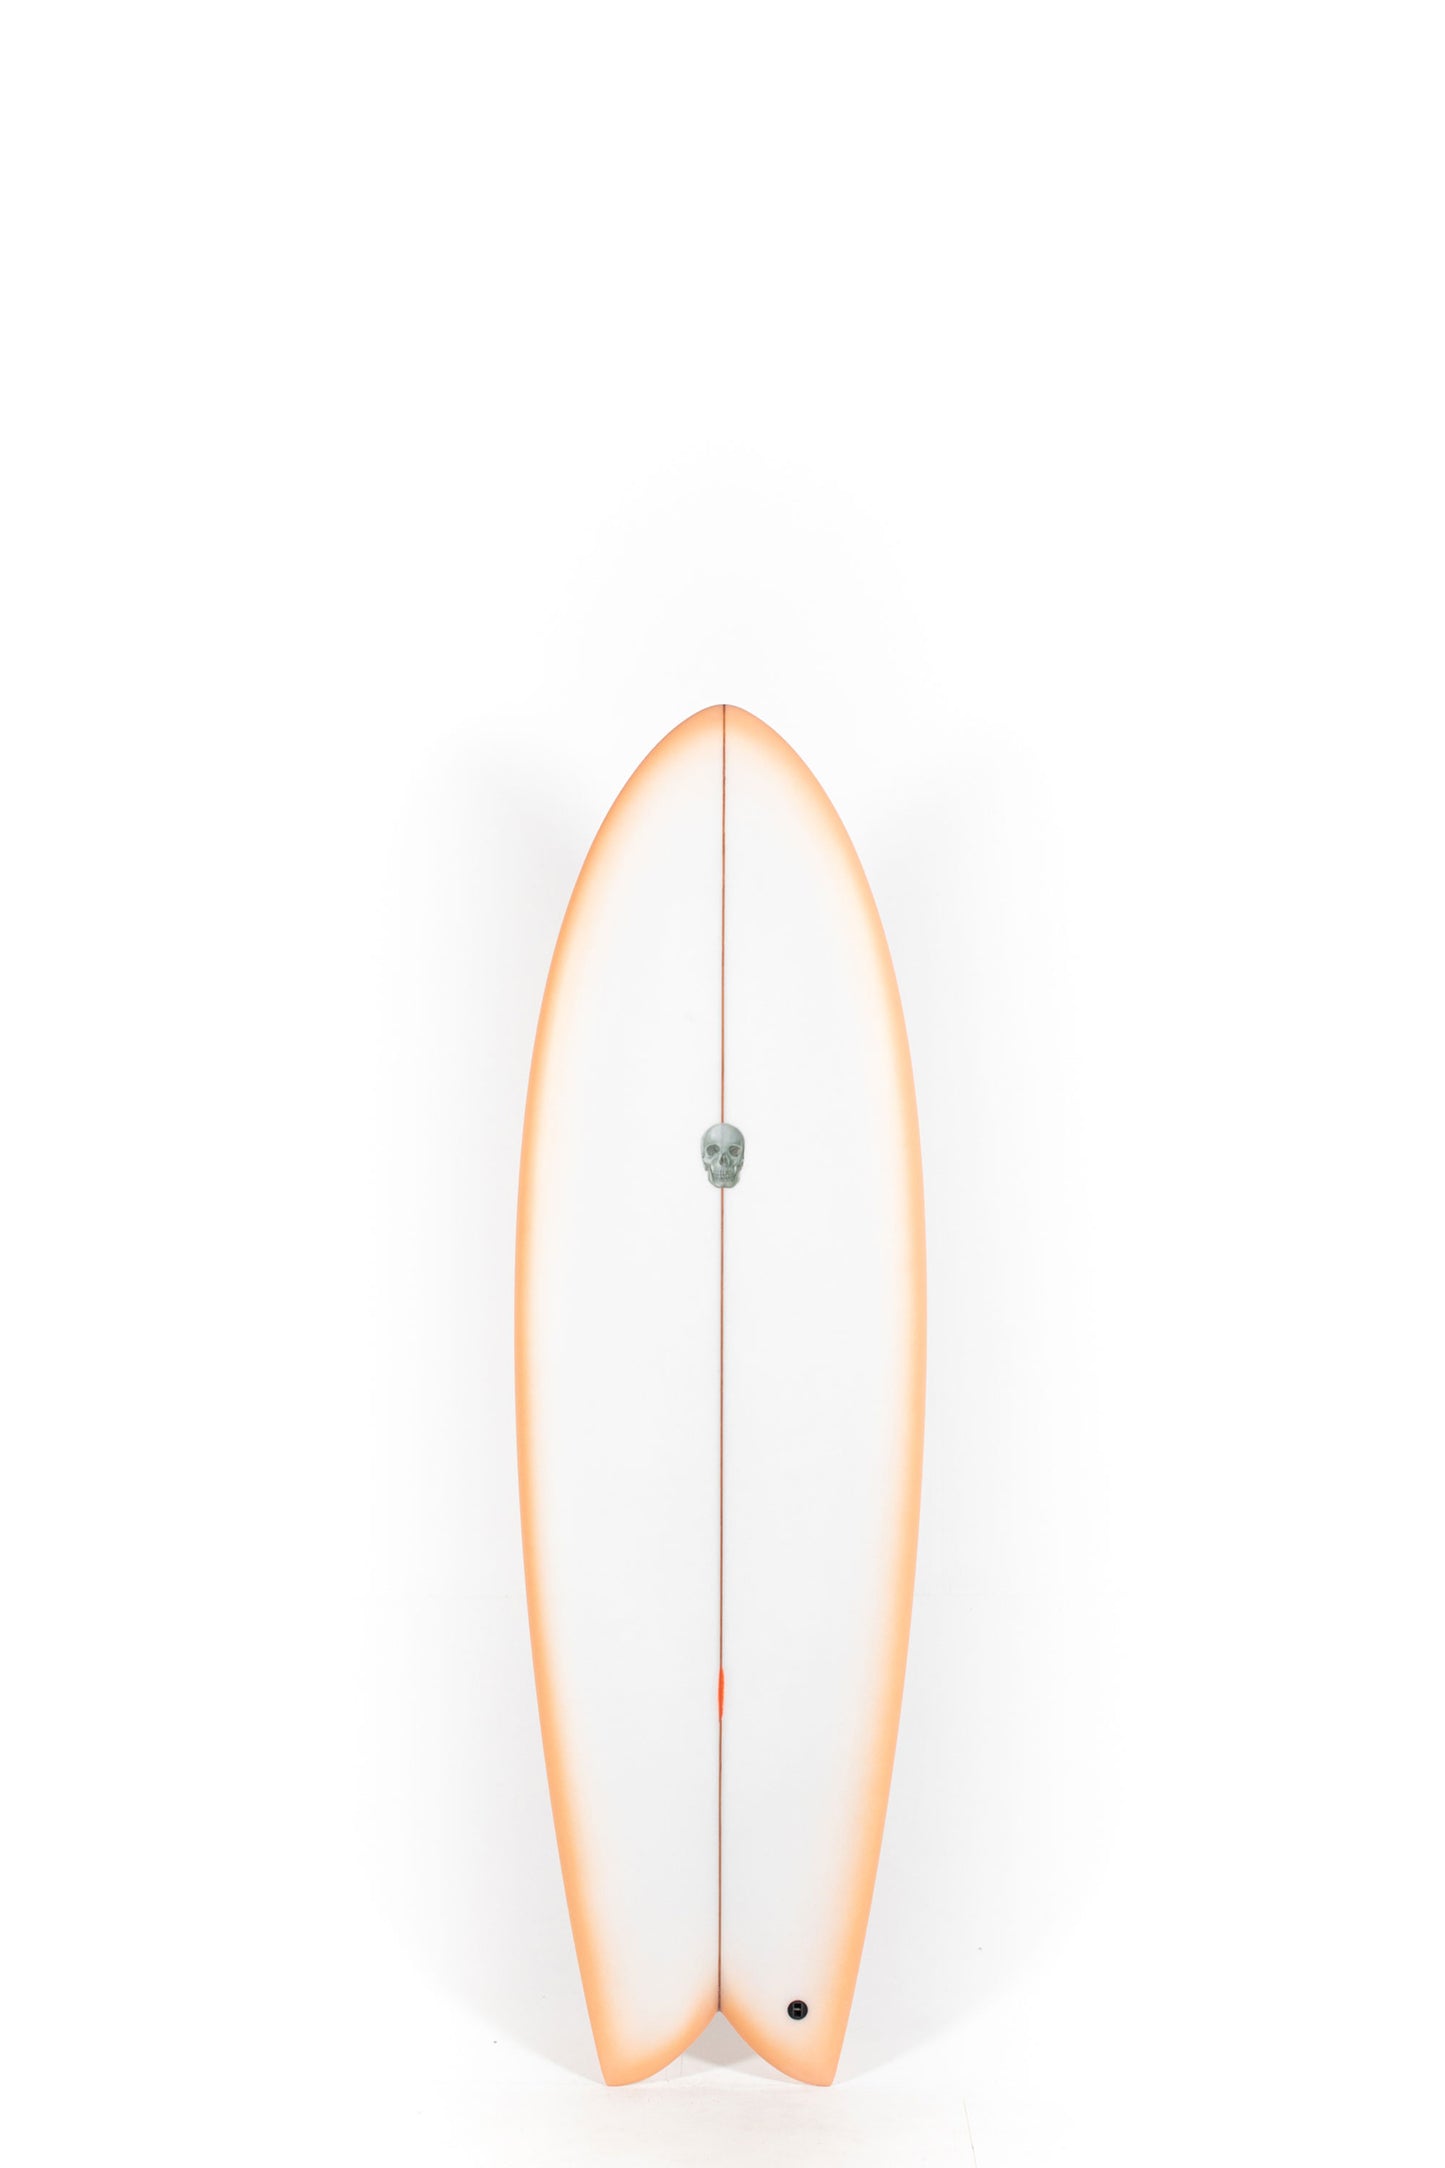 Pukas Surf Shop - Christenson Surfboards - MYCONAUT - 5'11" x 21 1/4 x 2 5/8 - CX04481